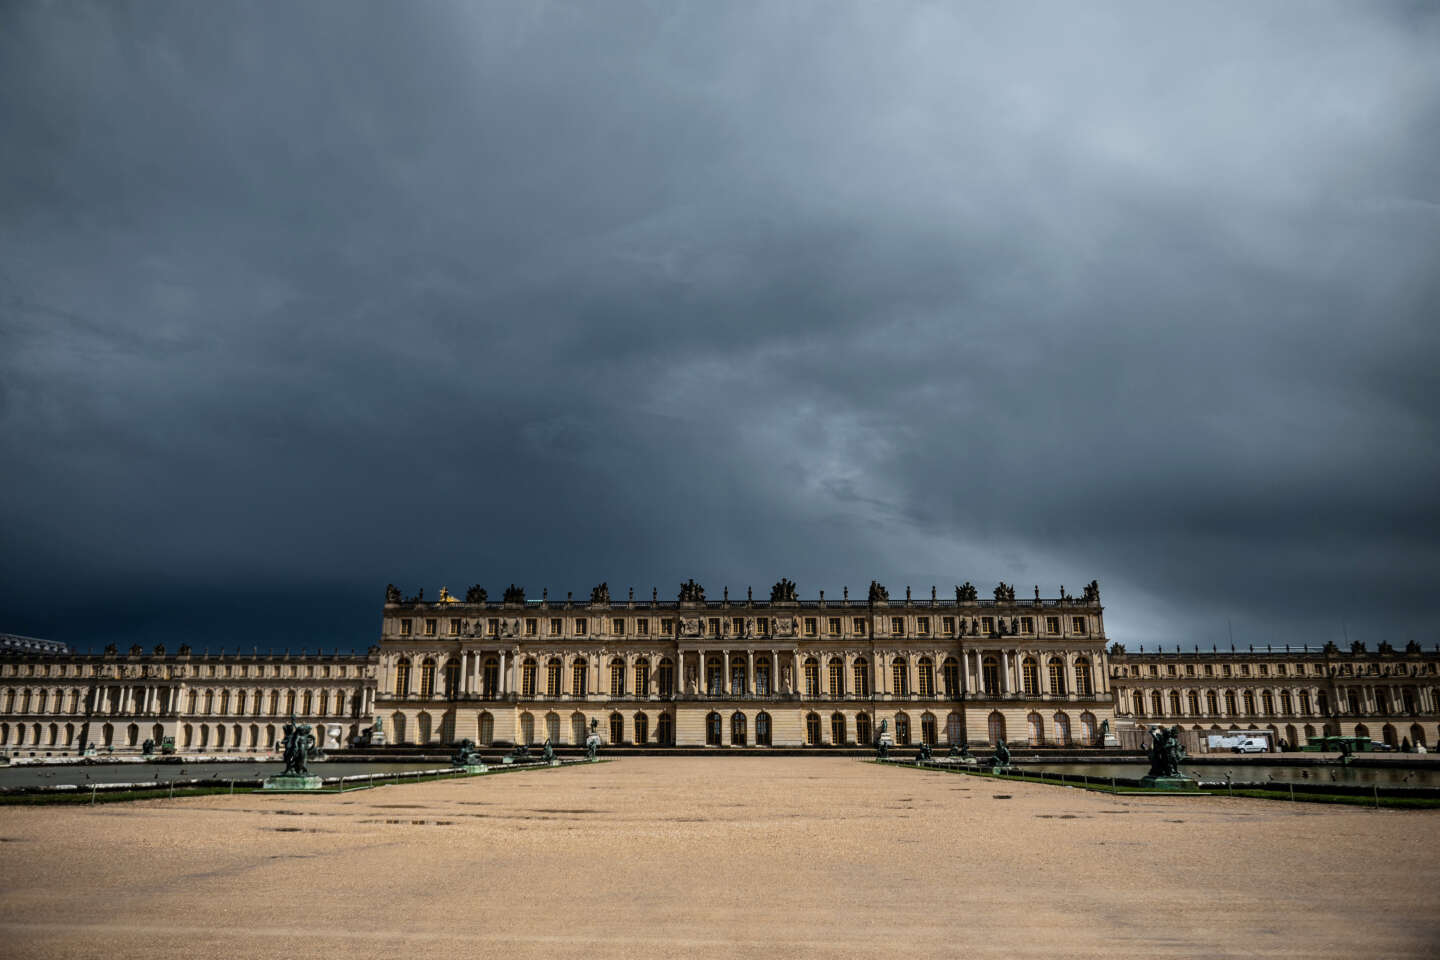 Le château de Versailles évacué après une sixième alerte à la bombe en une semaine